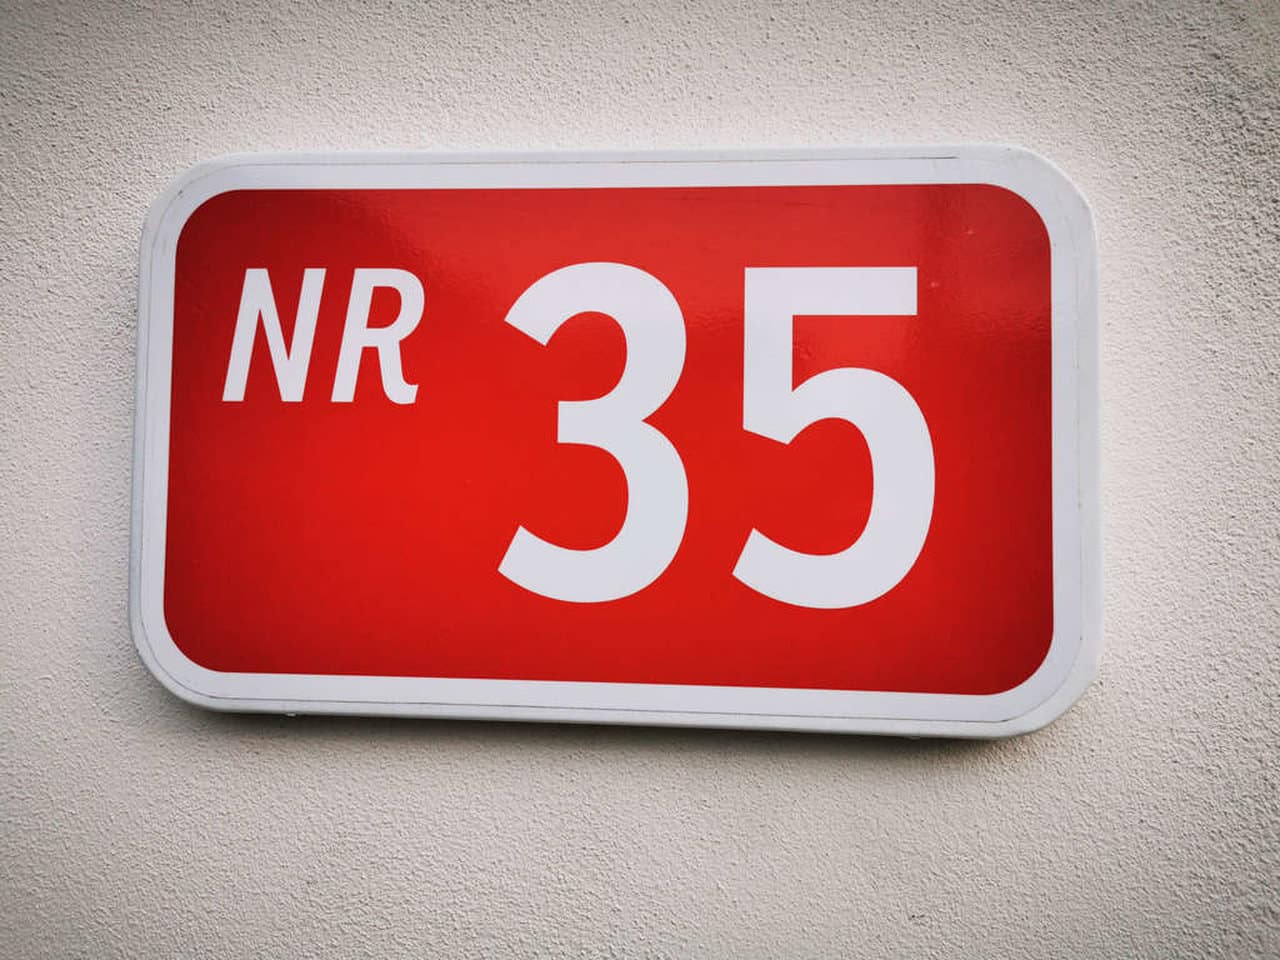 Ilustrando treinamento nr 35, uma placa vermelha escrito "nr 35" numa parede branca